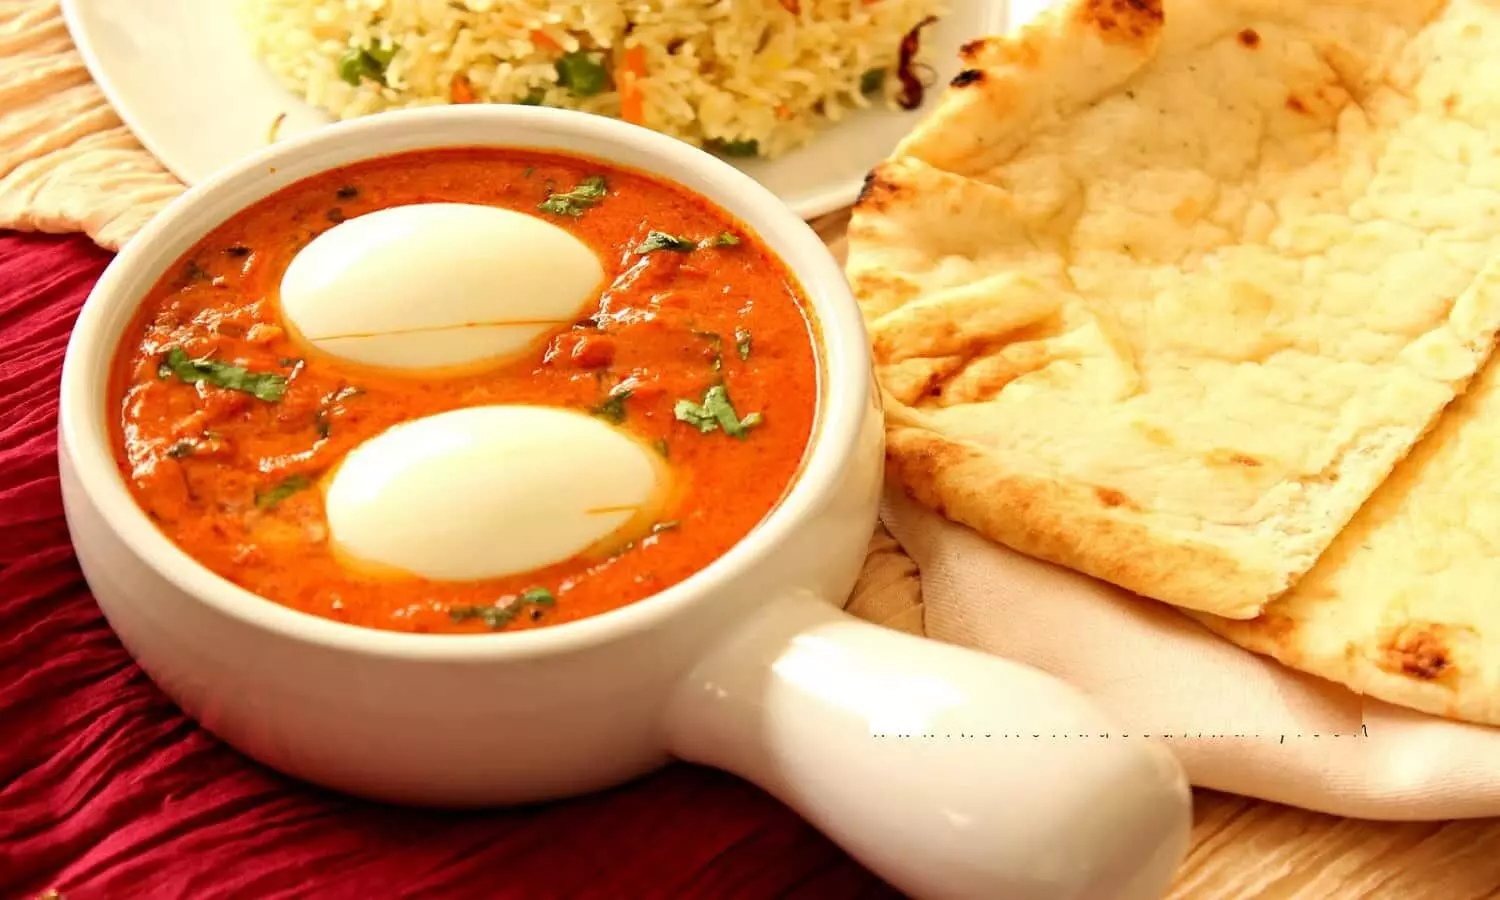 Egg Makhni Recipe: ब्रेकफास्ट में एग मखनी आजमा कर देखिए लोगो आपकी तारीफे करते नहीं थकेंगे।